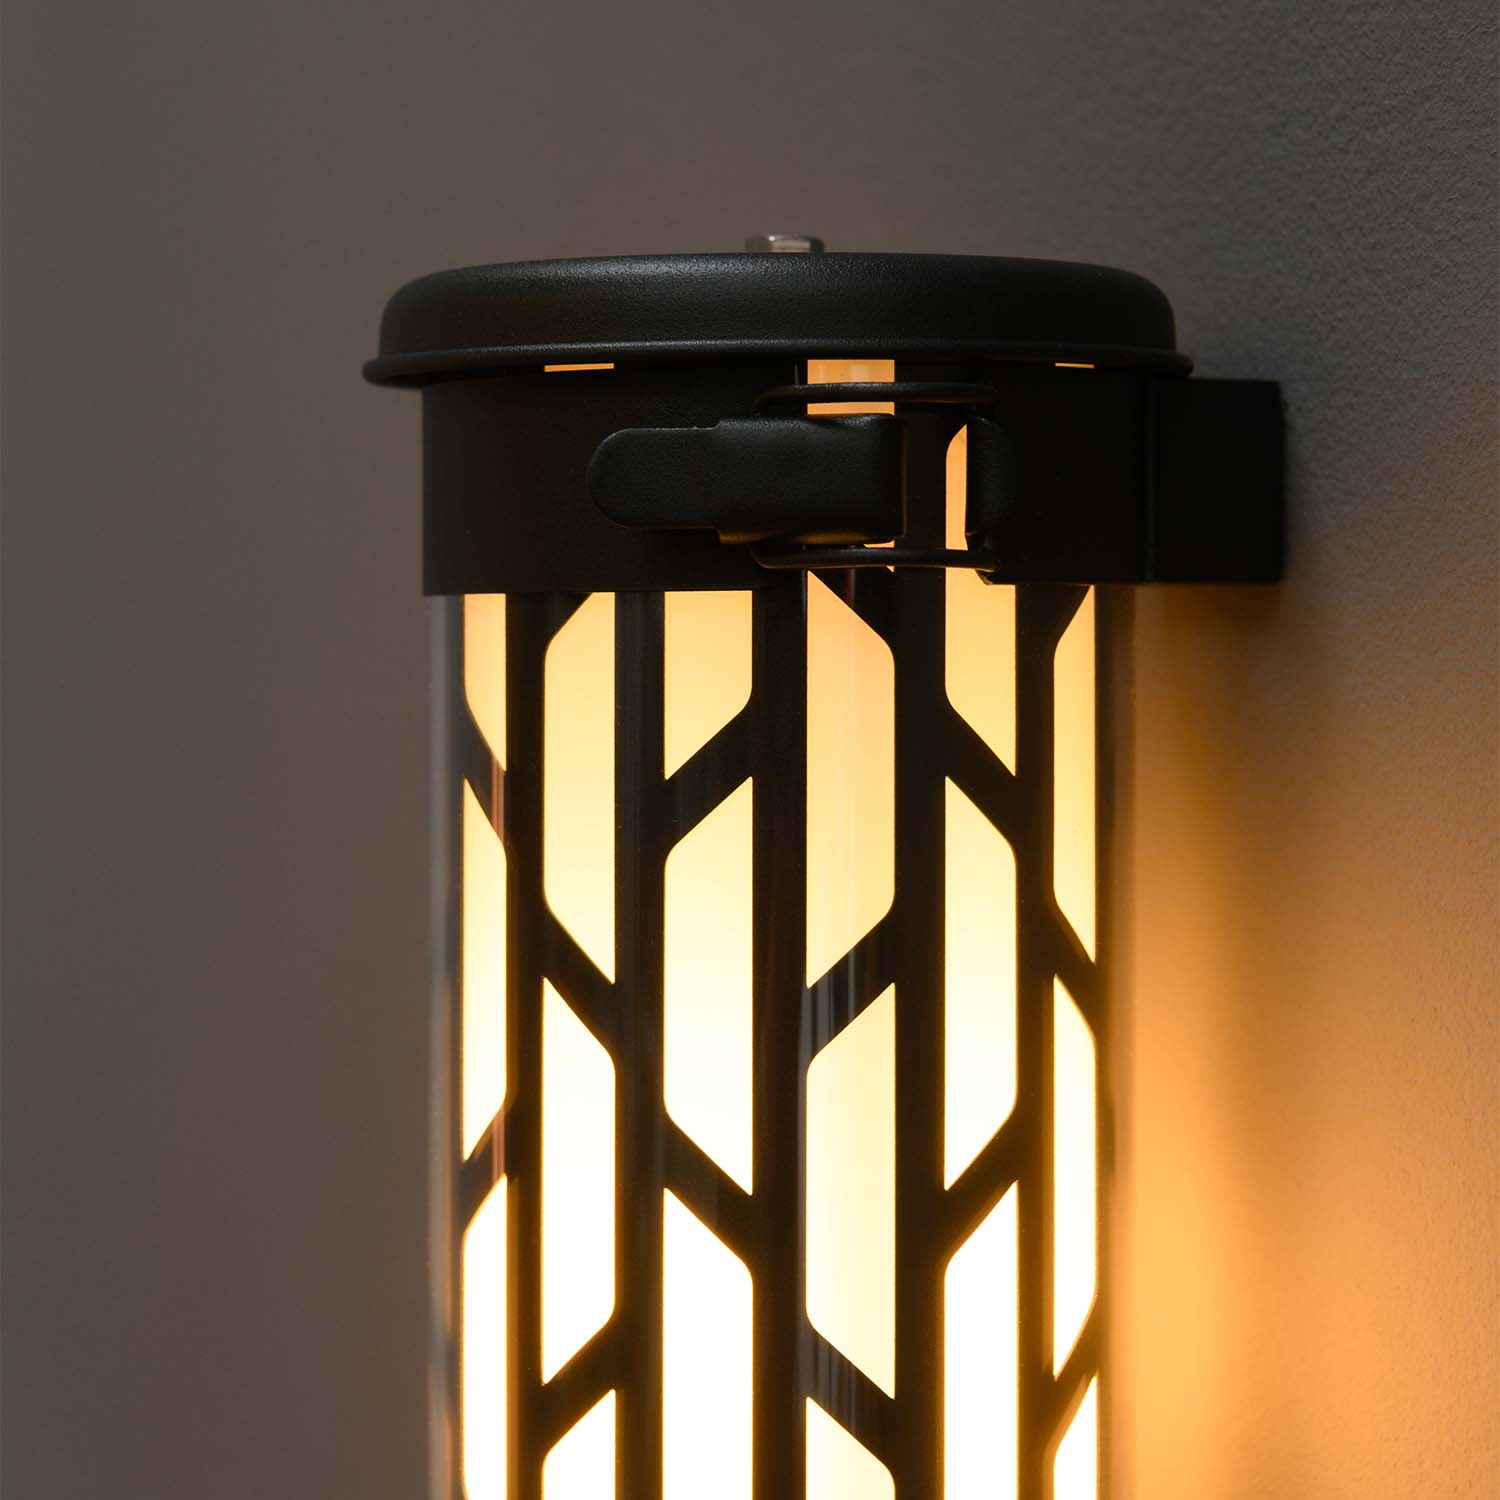 BELLEVILLE NANO - Waterproof steel or black design wall light